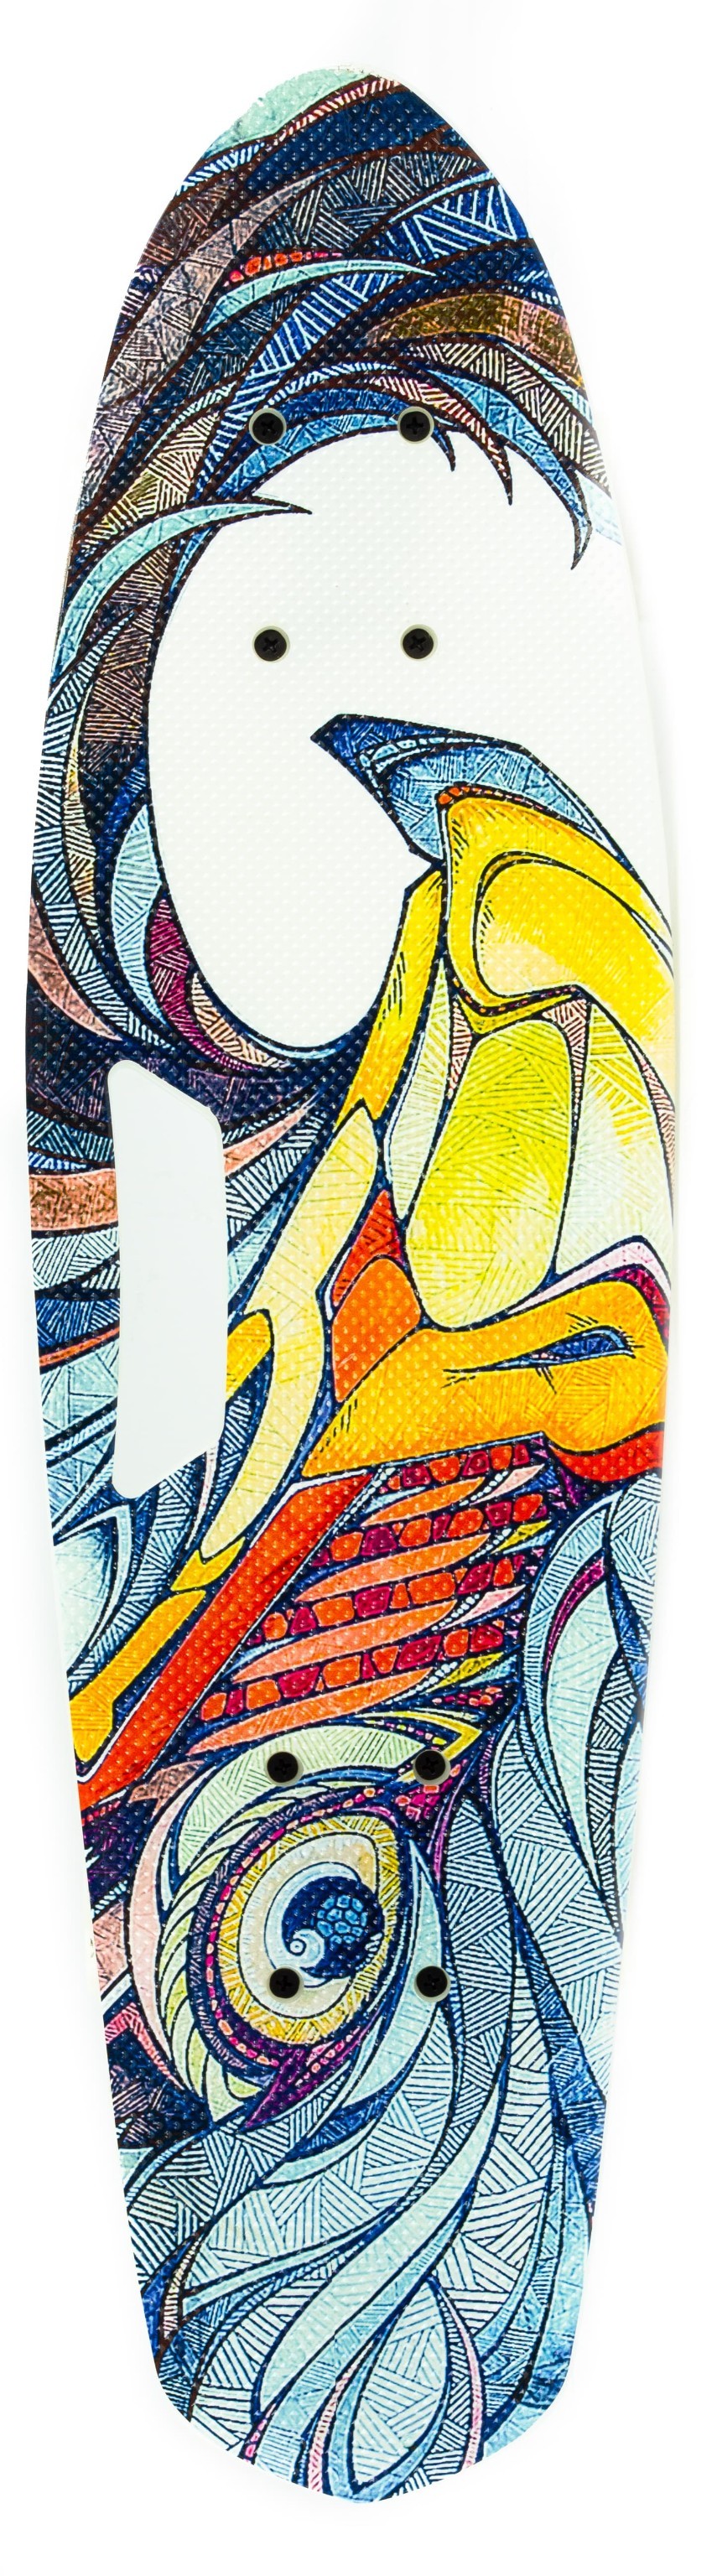 Пенни-Борд со светящимися колесами и ручкой для переноски, 65 см. 00480 / Бело-голубой